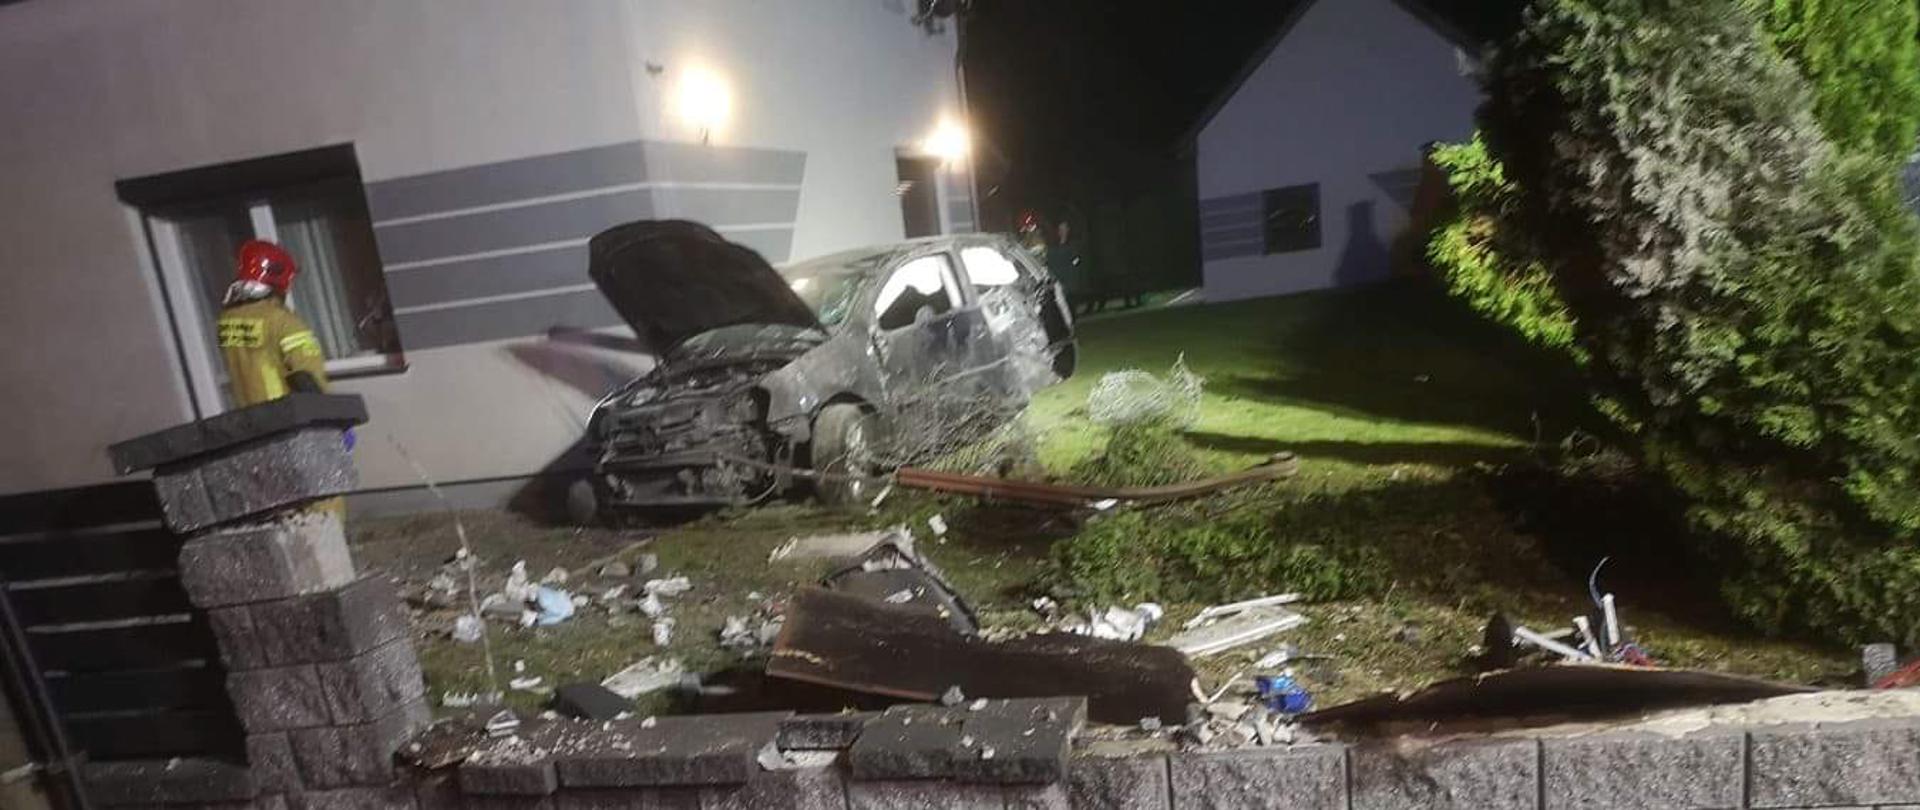 Zdjęcie przedstawia uszkodzony płot posesji oraz samochód znajdujący się przy ścianie domu. Obok stoi strażak